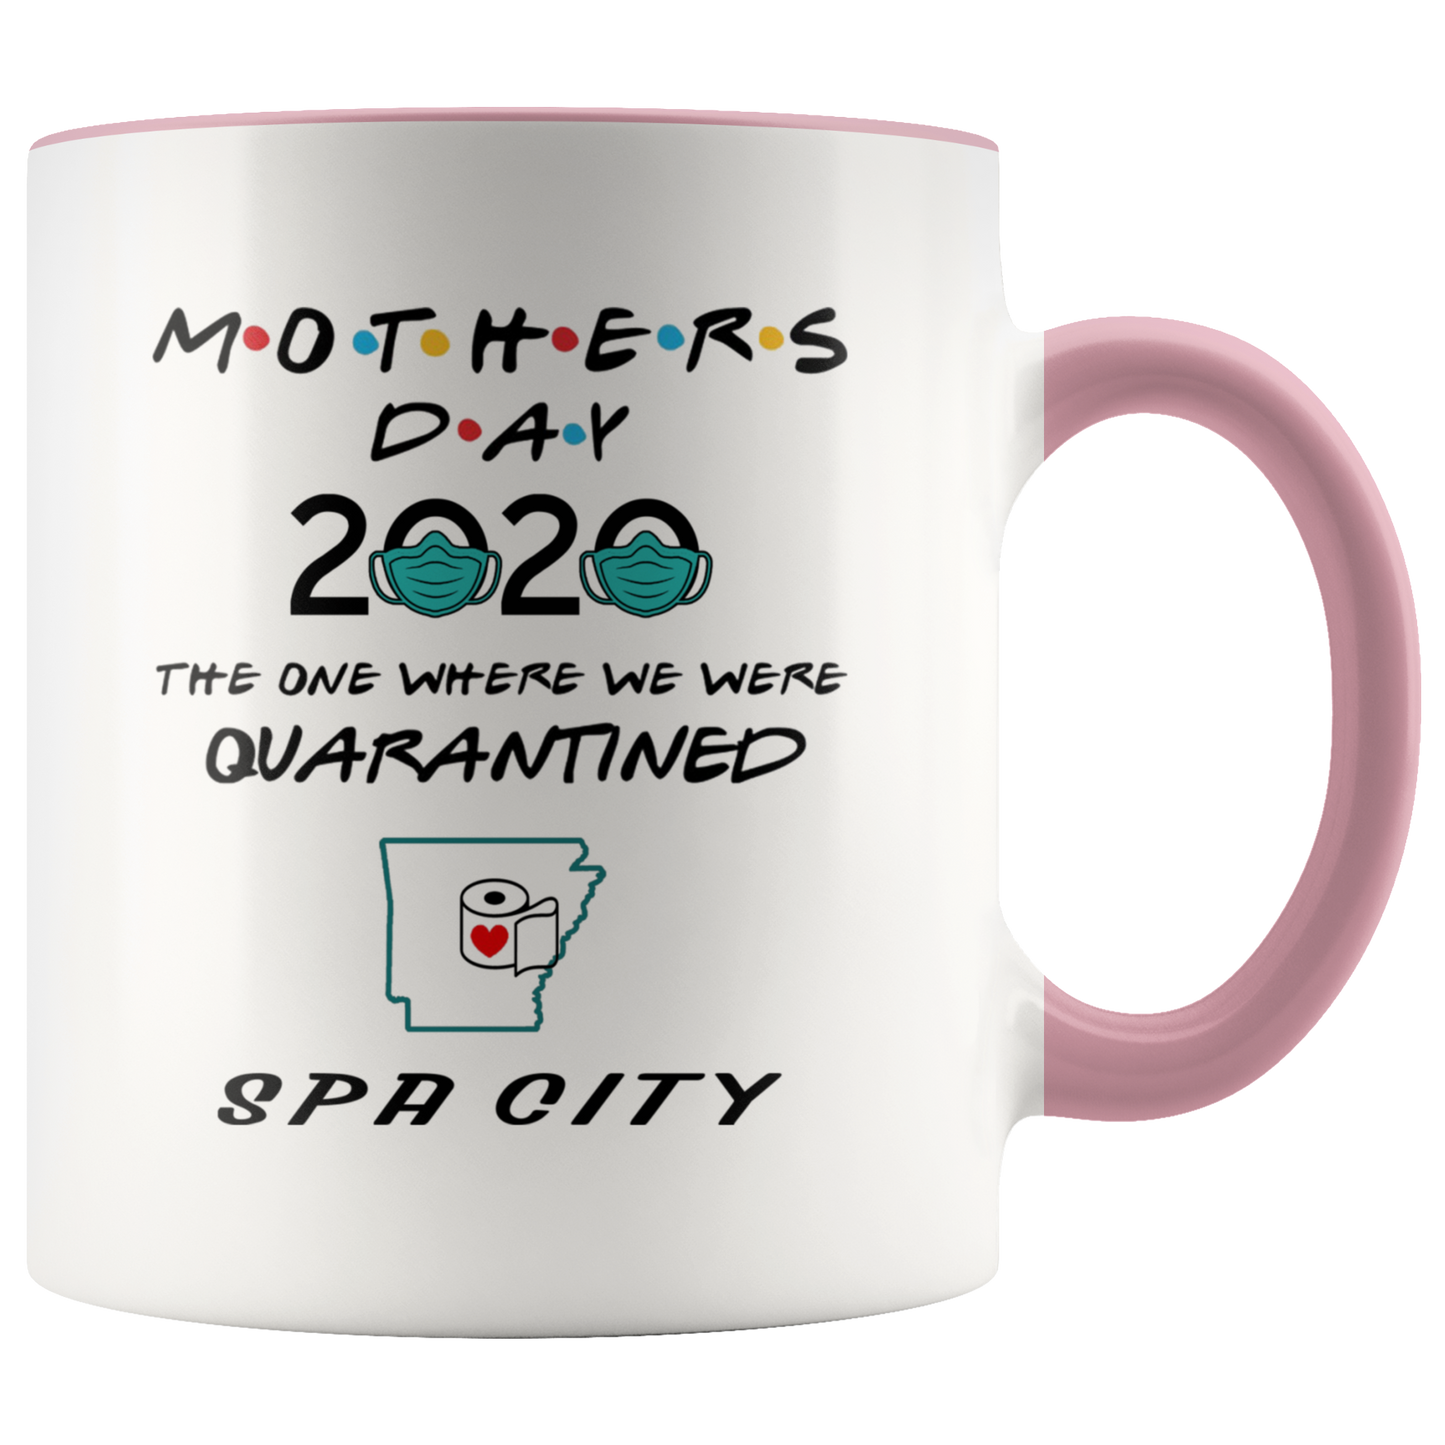 MUG01221353508-sp-27308 - [ Spa City | Arkansas ] (CC_Accent_Mug_) Mothers Day 2020 Mug Quarantine - The One Where We Were Quar